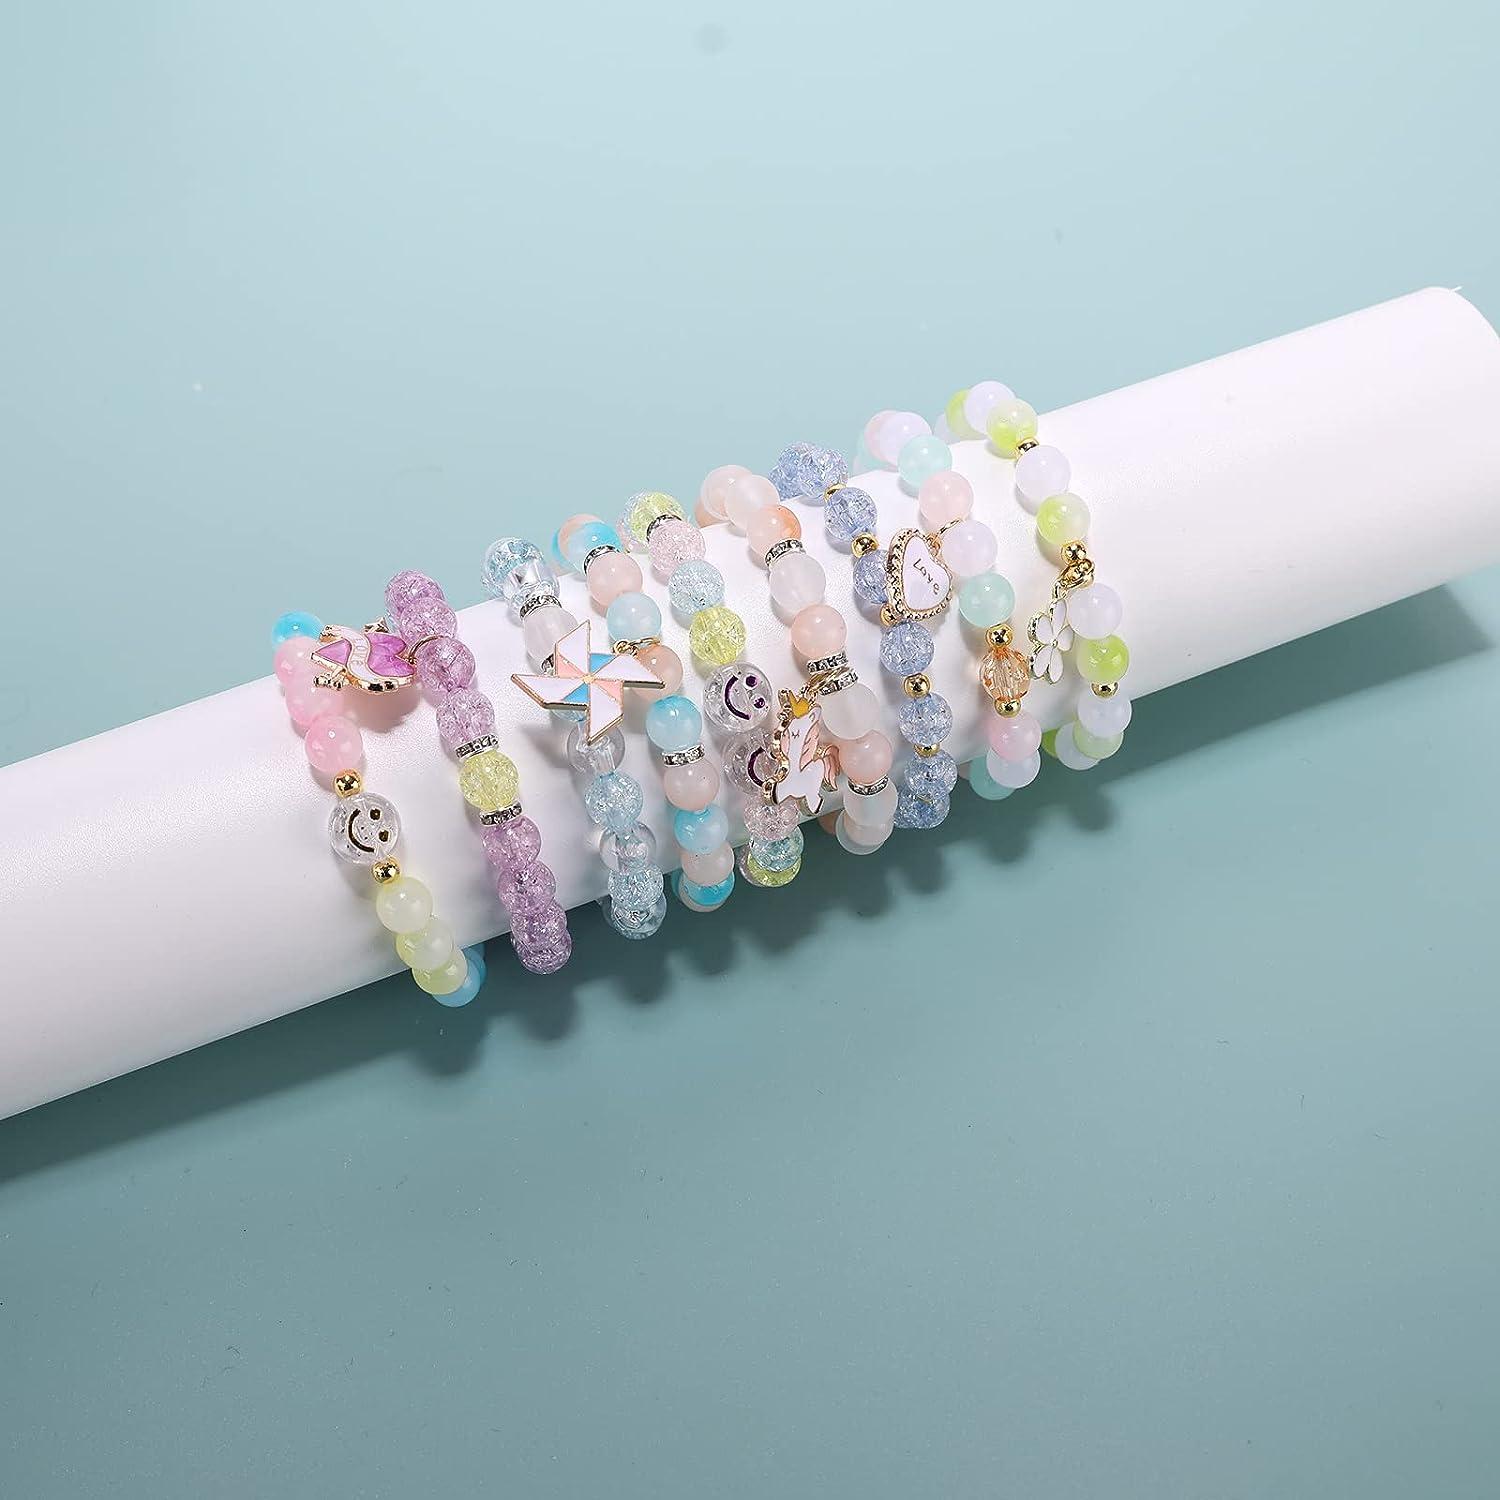 DIY Colorful Beads Bracelet Making Kit for Girls Birthday Gift